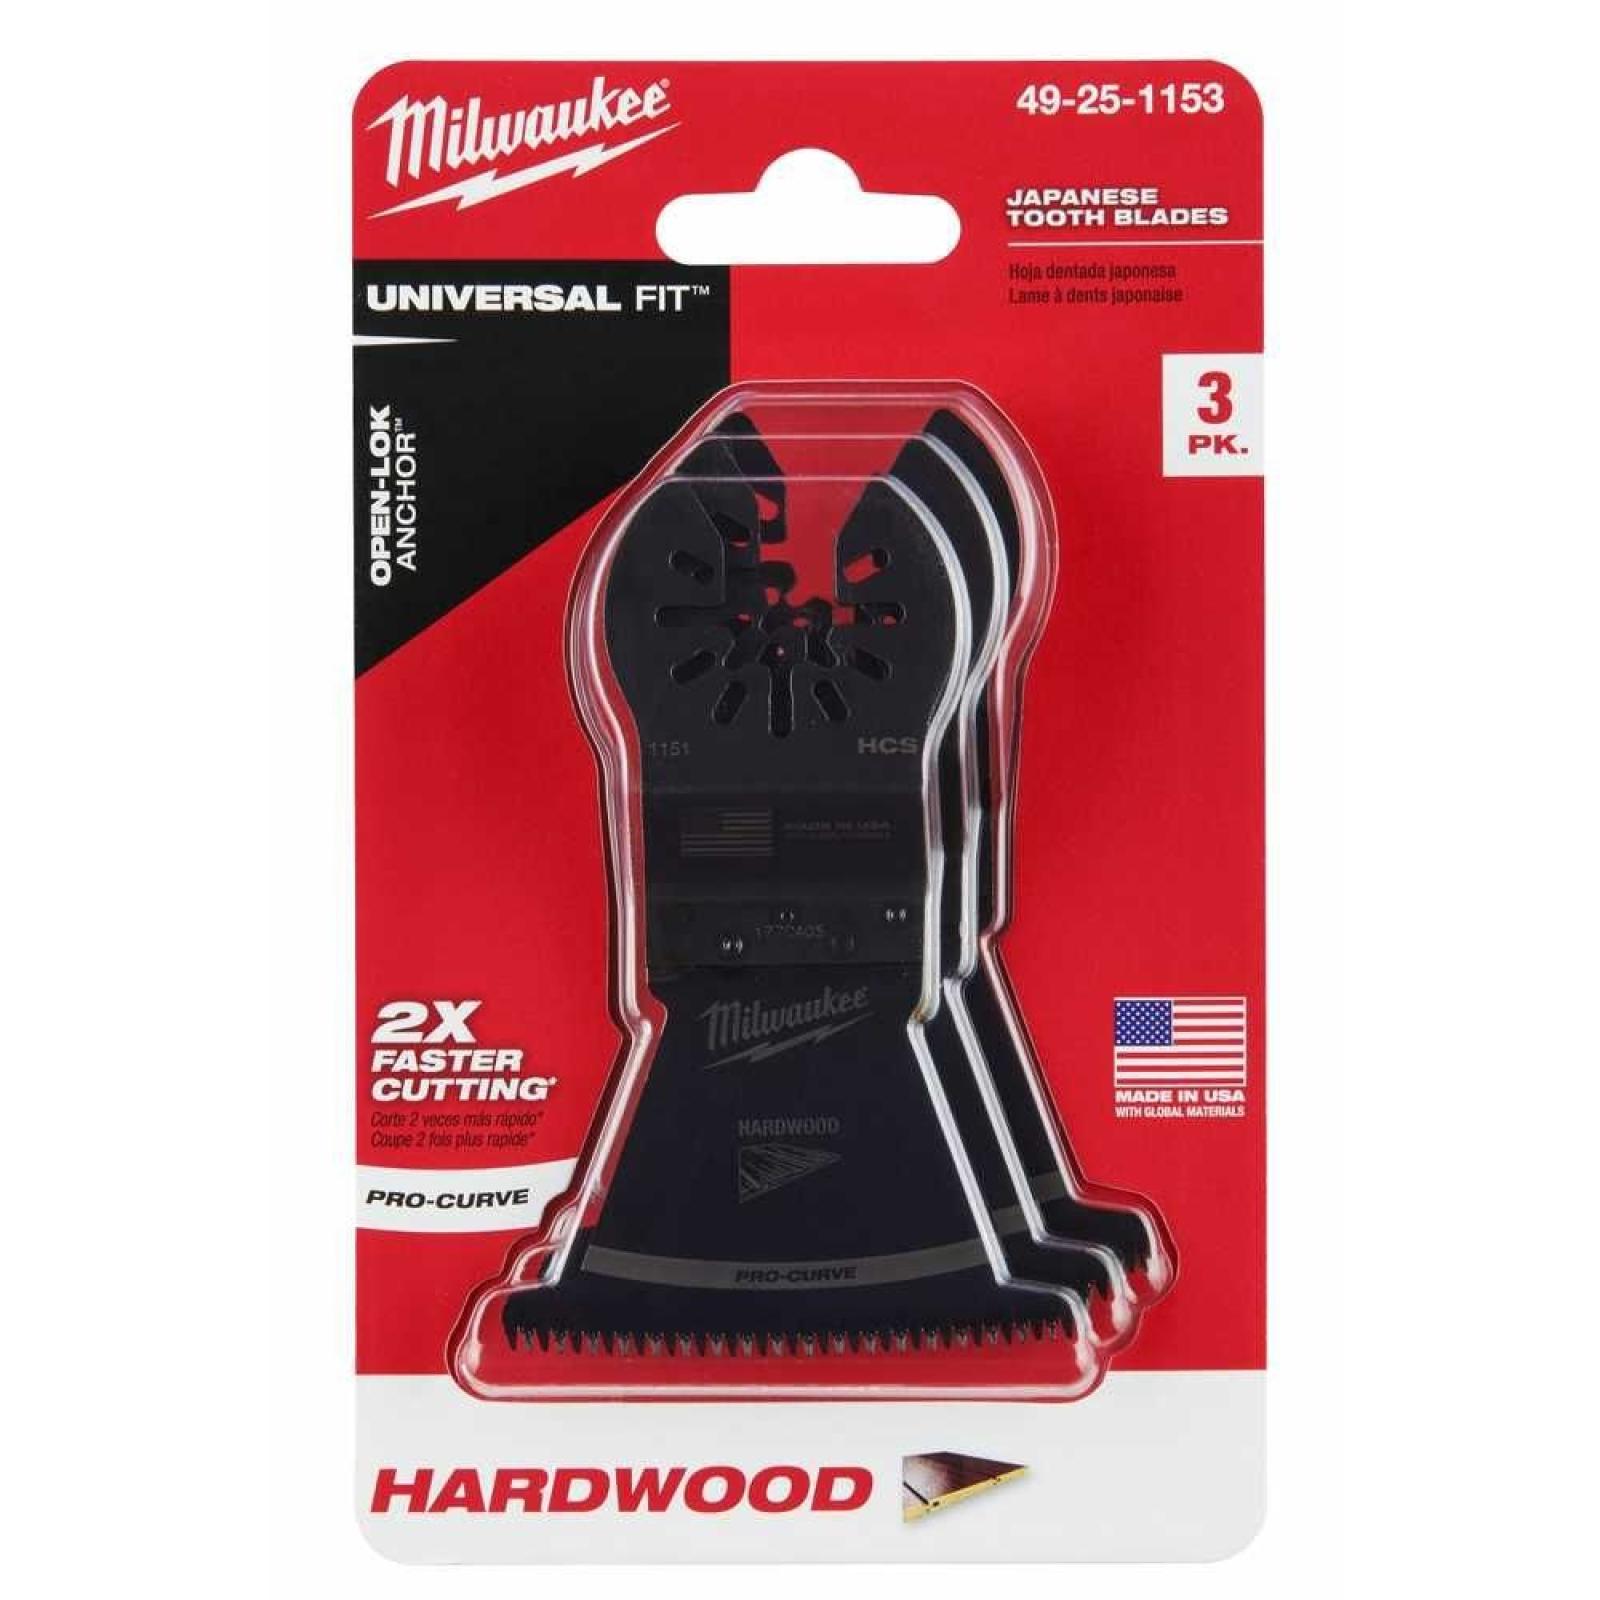 Milwaukee High Carbon Steel Universal Fit Japanese Teeth Hardwood Cutting Multi-Tool Oscillating Blade